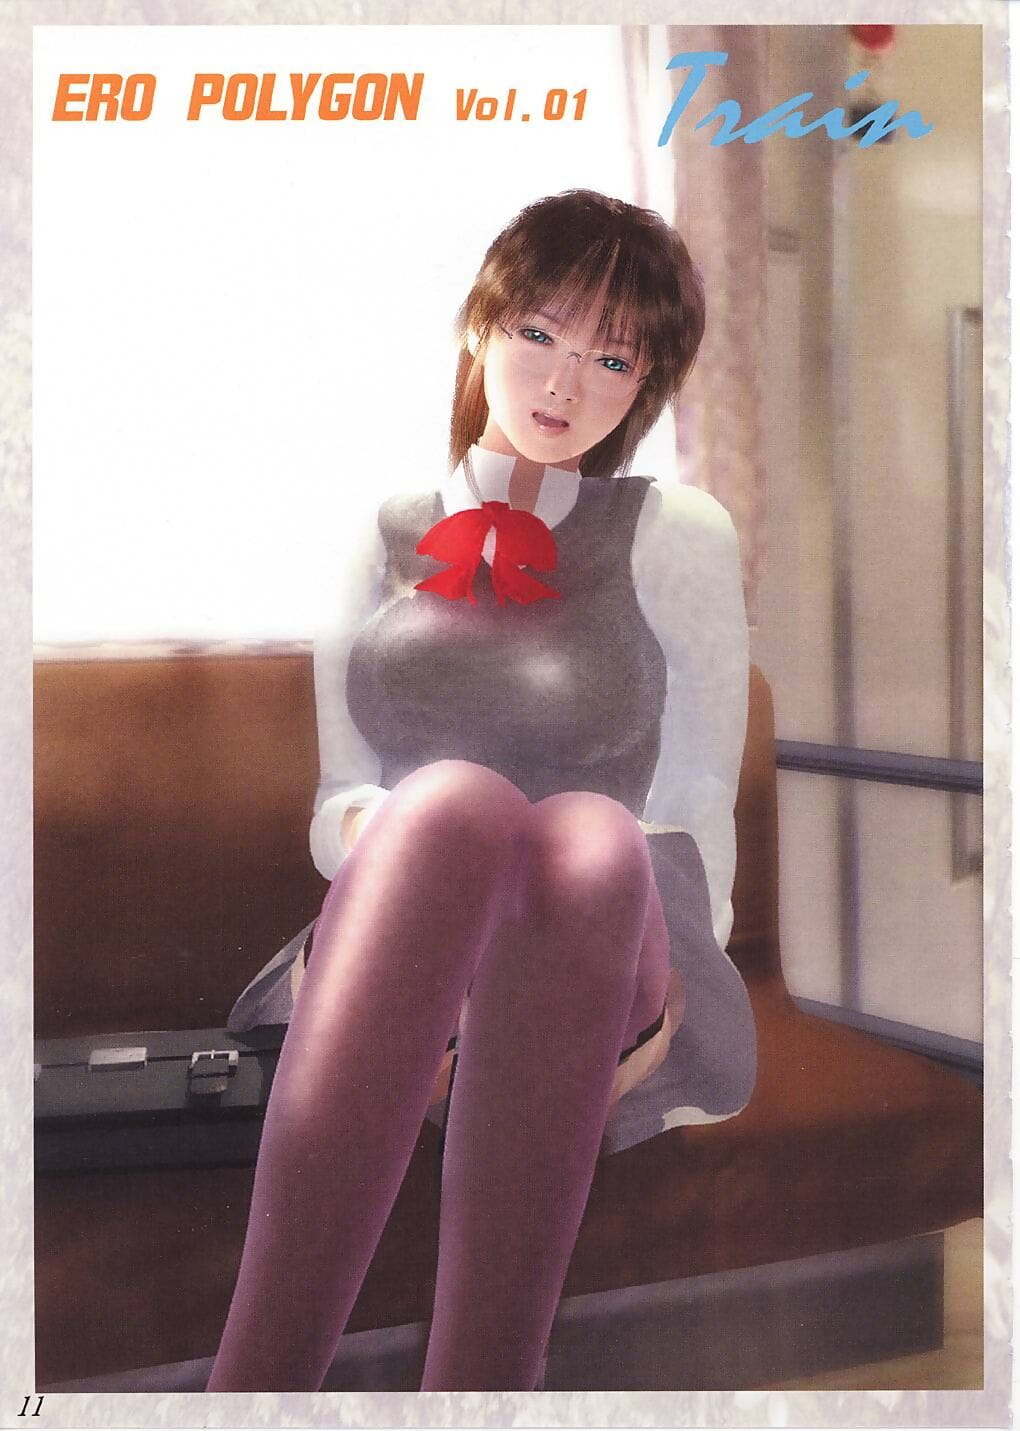 Megami Kyouten Aoki Reimu EroPolygon Vol.01 - part 2 page 1